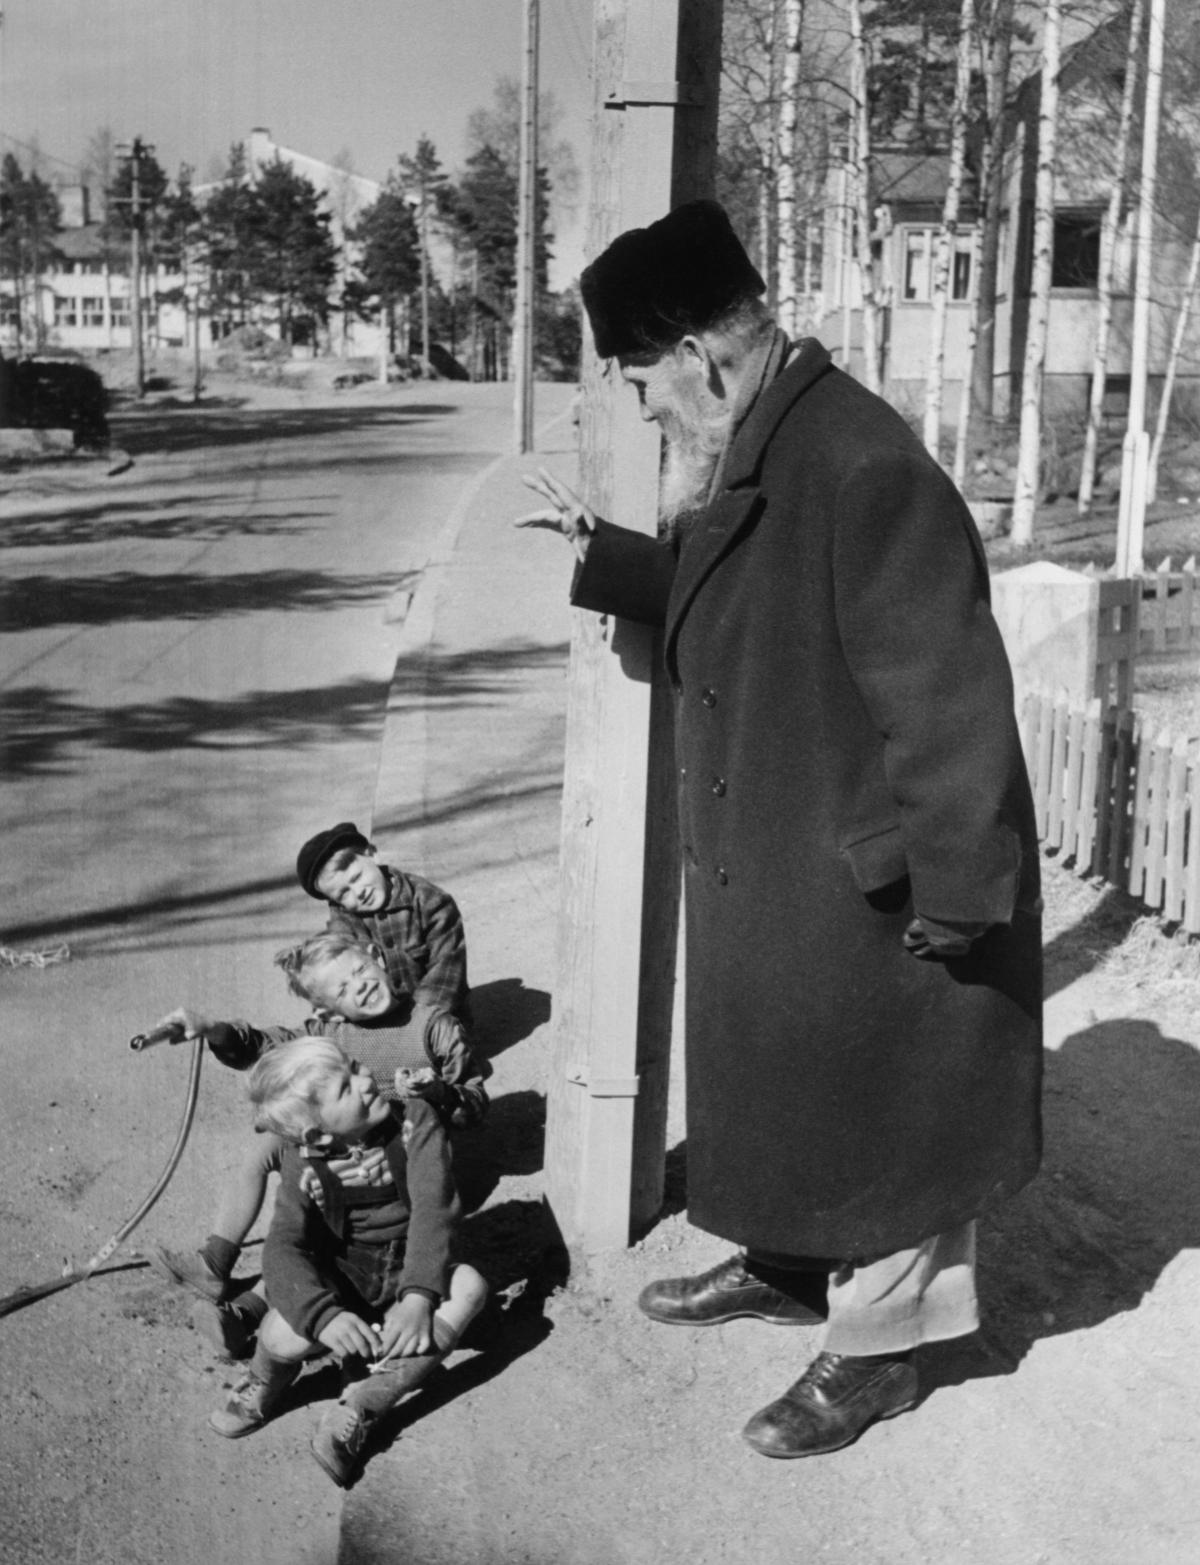 Nobelförfattaren Frans Eemil Sillanpää hälsar på barn på en gata i Hertonäs. Foto E. Heinonen, början av 1950-talet. Foto: Helsingfors stadsmuseum / E. Heinonen